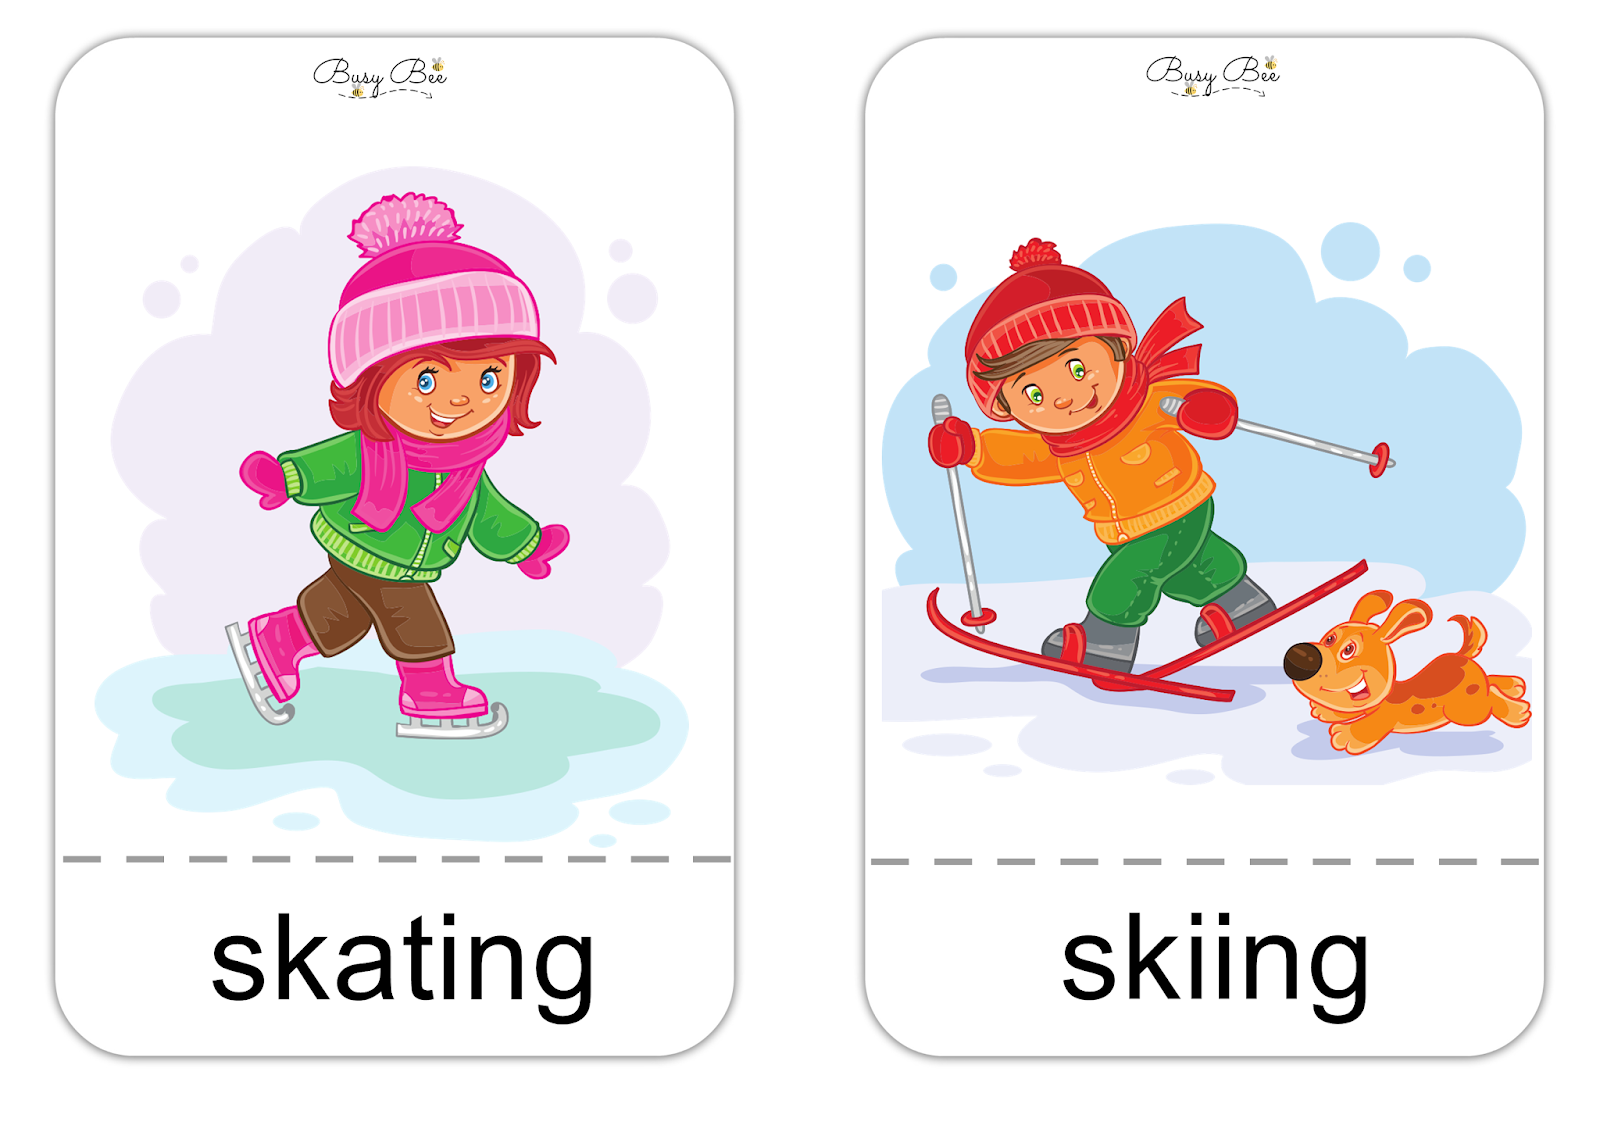 I skied перевод. Лыжи карточка для детей. Карточки Skating, Skiing. Лыжный спорт карточки для детей. Английский Ski.